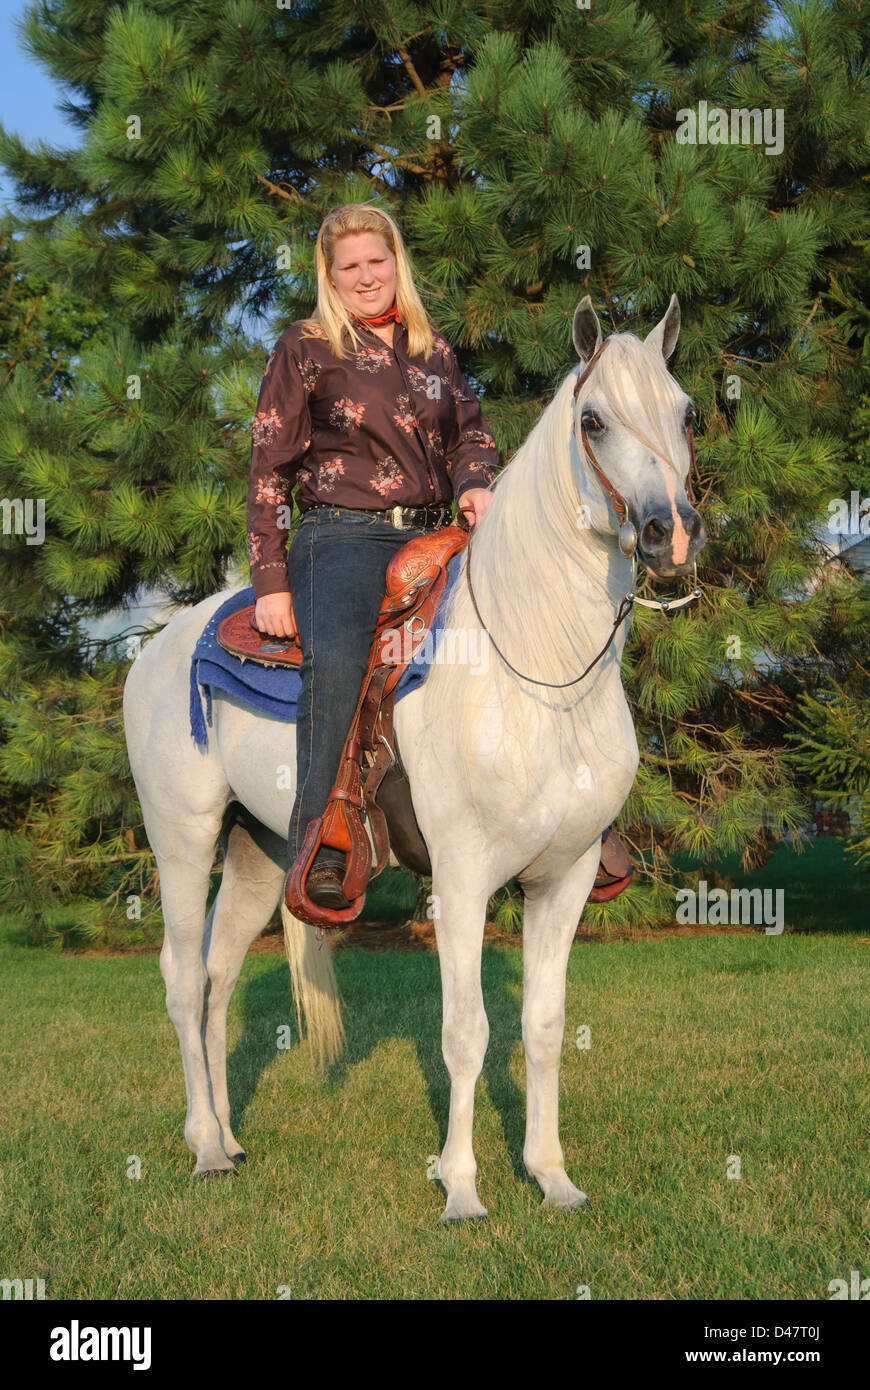 Femme l'équitation de soir lumière d'été, vue latérale présentent encore avec un cheval arabe blanc. Banque D'Images